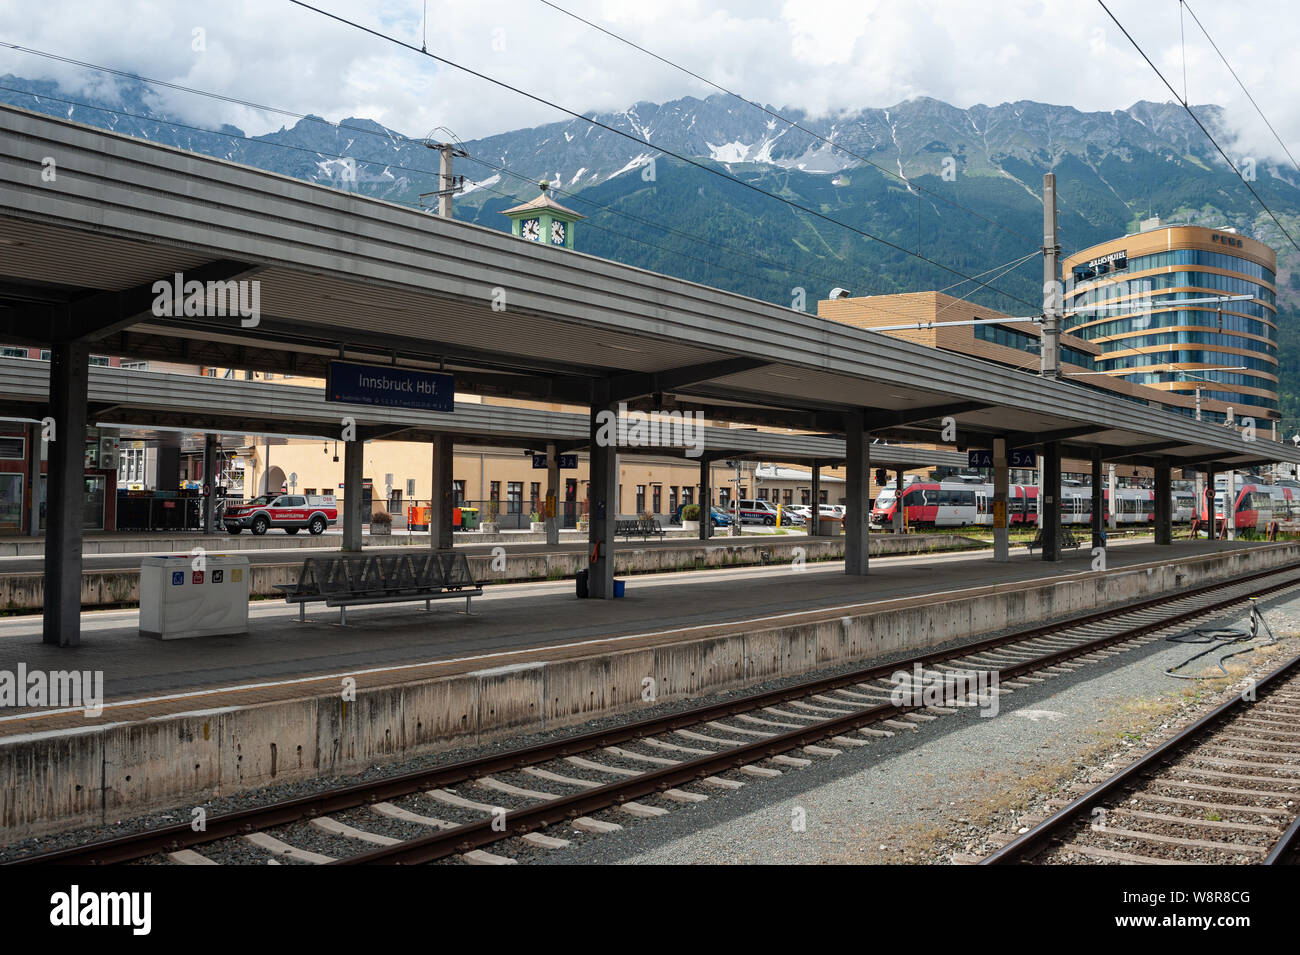 22.06.2019, Innsbruck, in Tirolo, Austria, Europa - Piattaforma e binari ferroviari presso la stazione ferroviaria centrale con le montagne come sfondo. Foto Stock